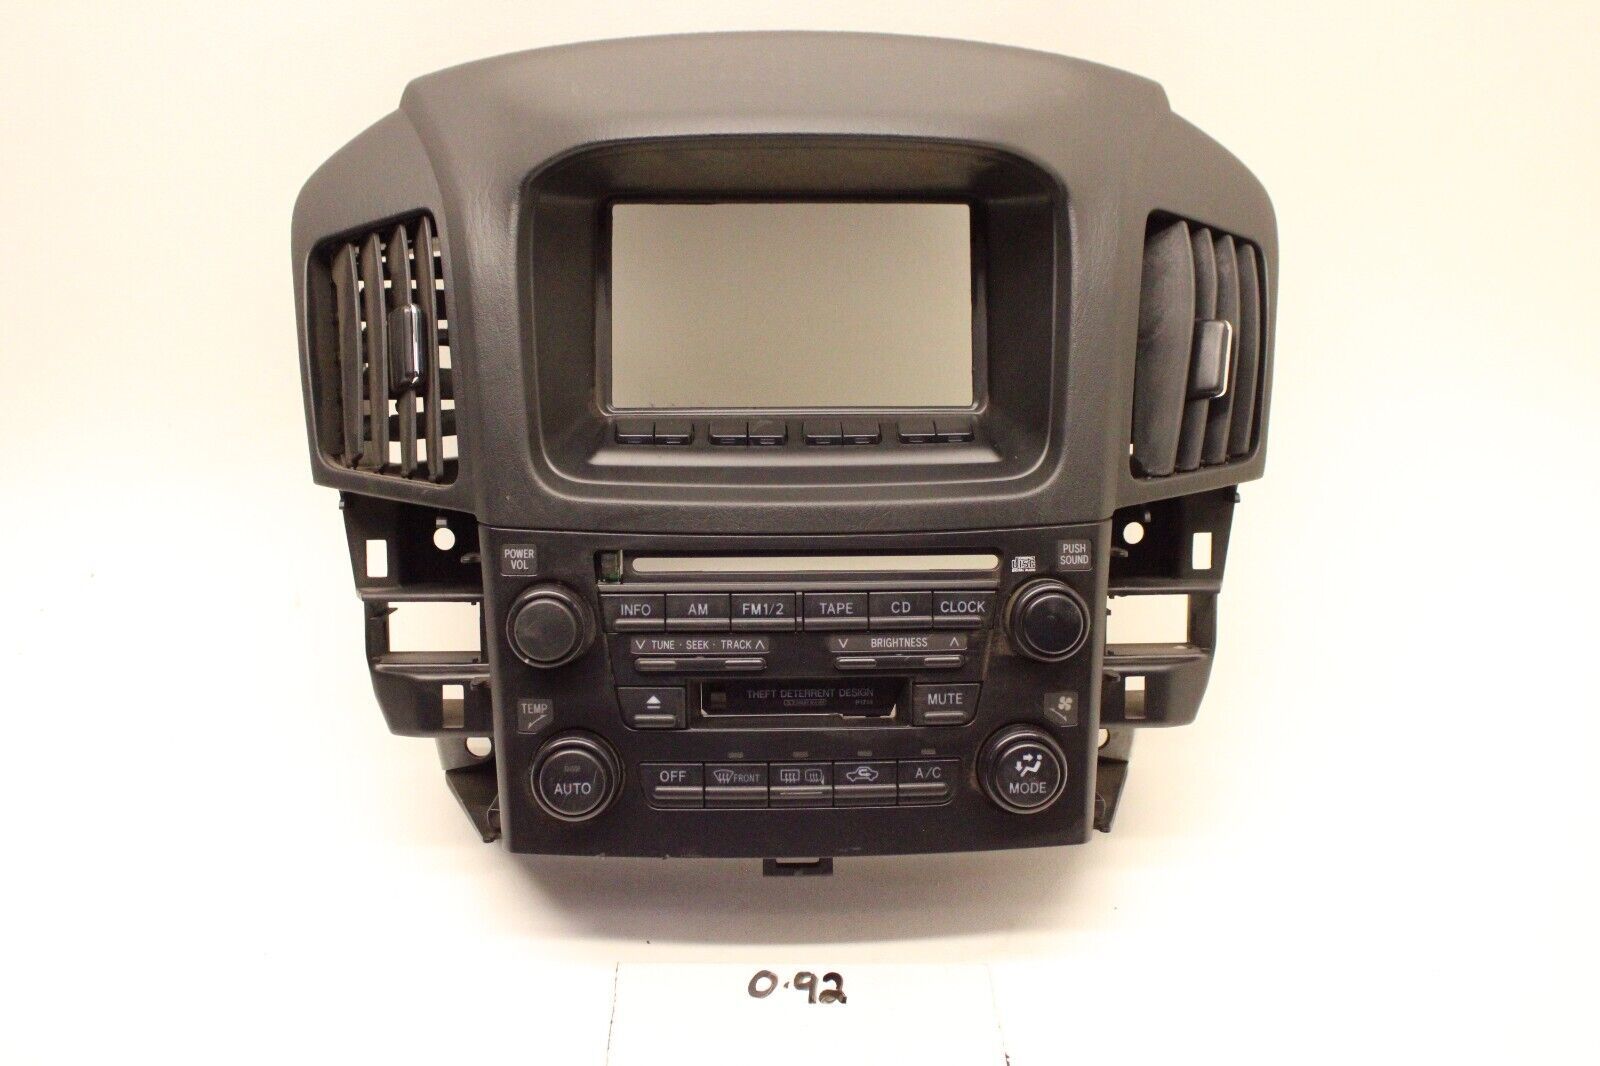 Primary image for New OEM Radio Face Controls 1999-2003 RX300 Lexus P1714 84010-48031-C0 Black